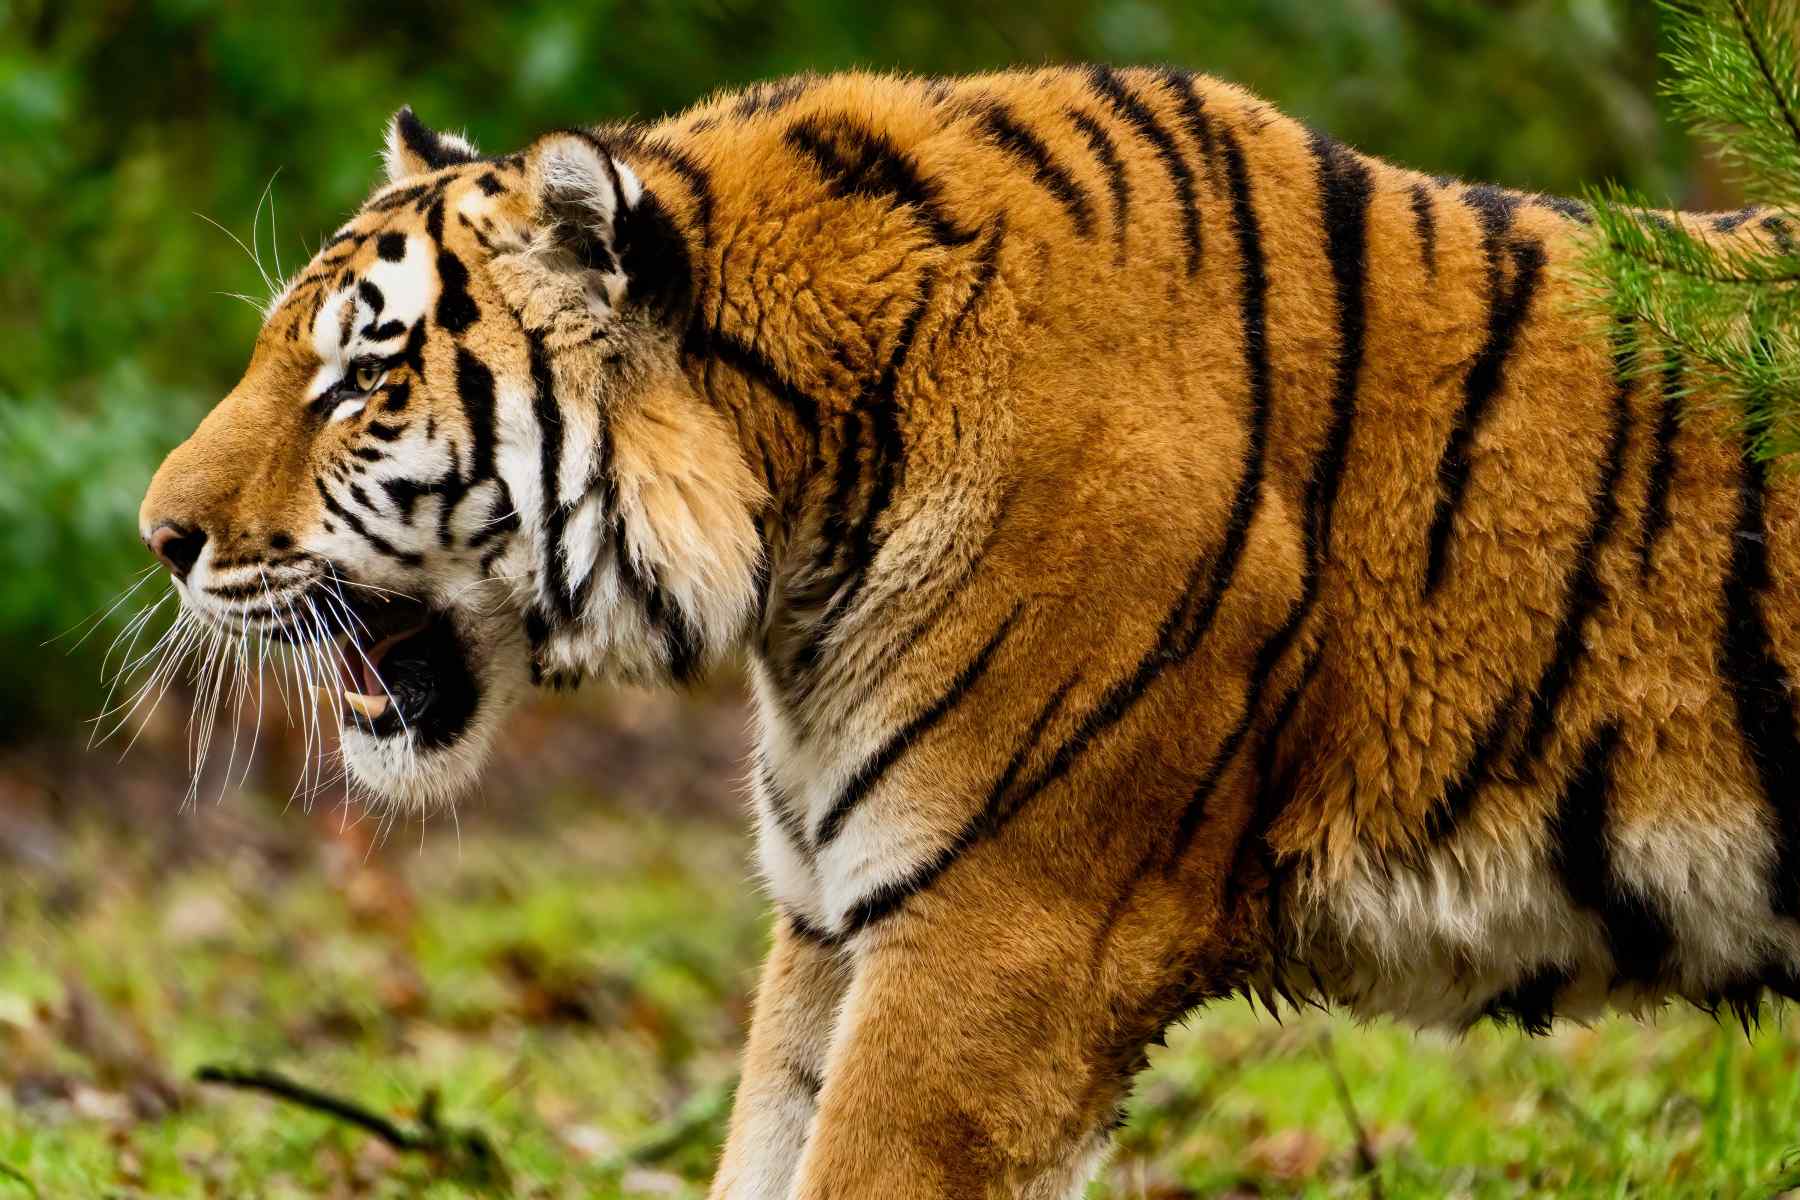 "What do tigers eat?" - animalanswerguide.com